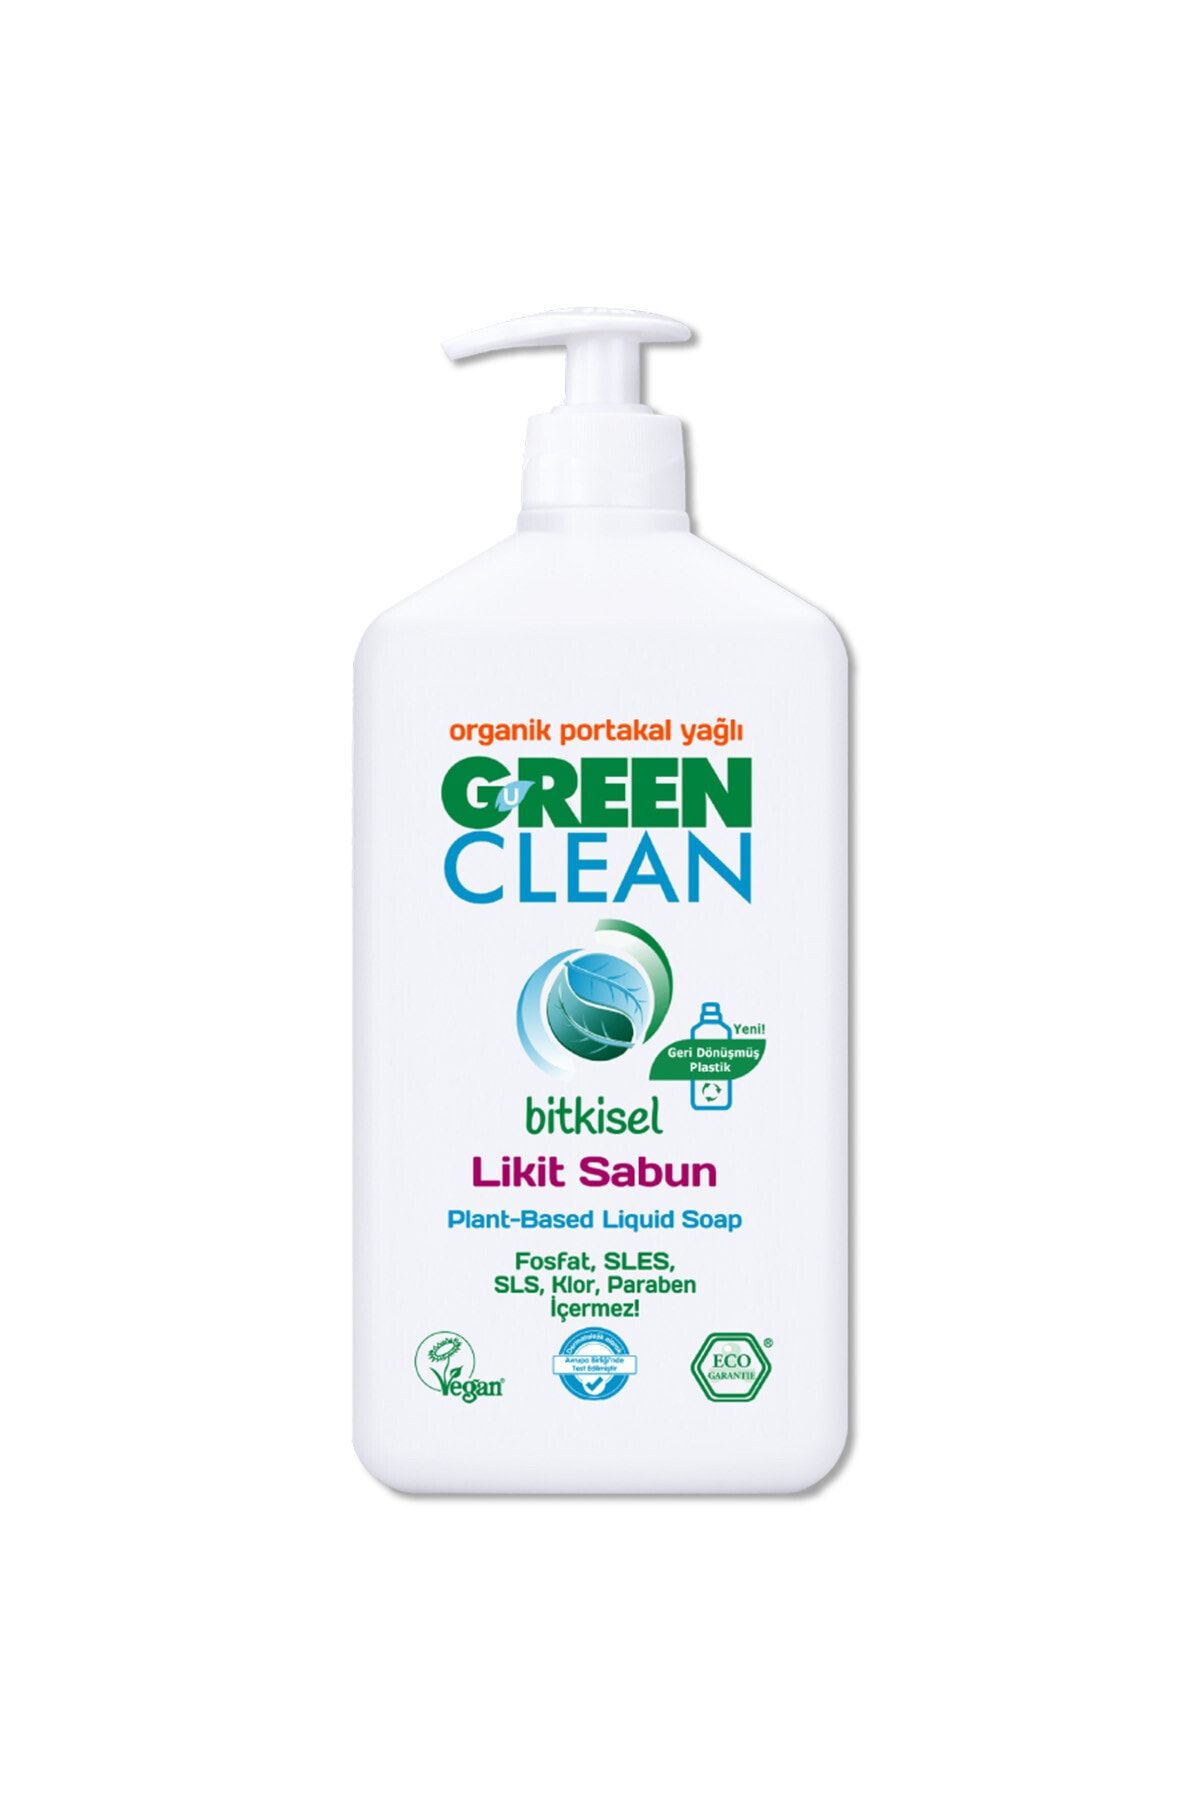 Green Clean Organik Portakal Yağlı Bitkisel Likit El Sabunu 500 ml